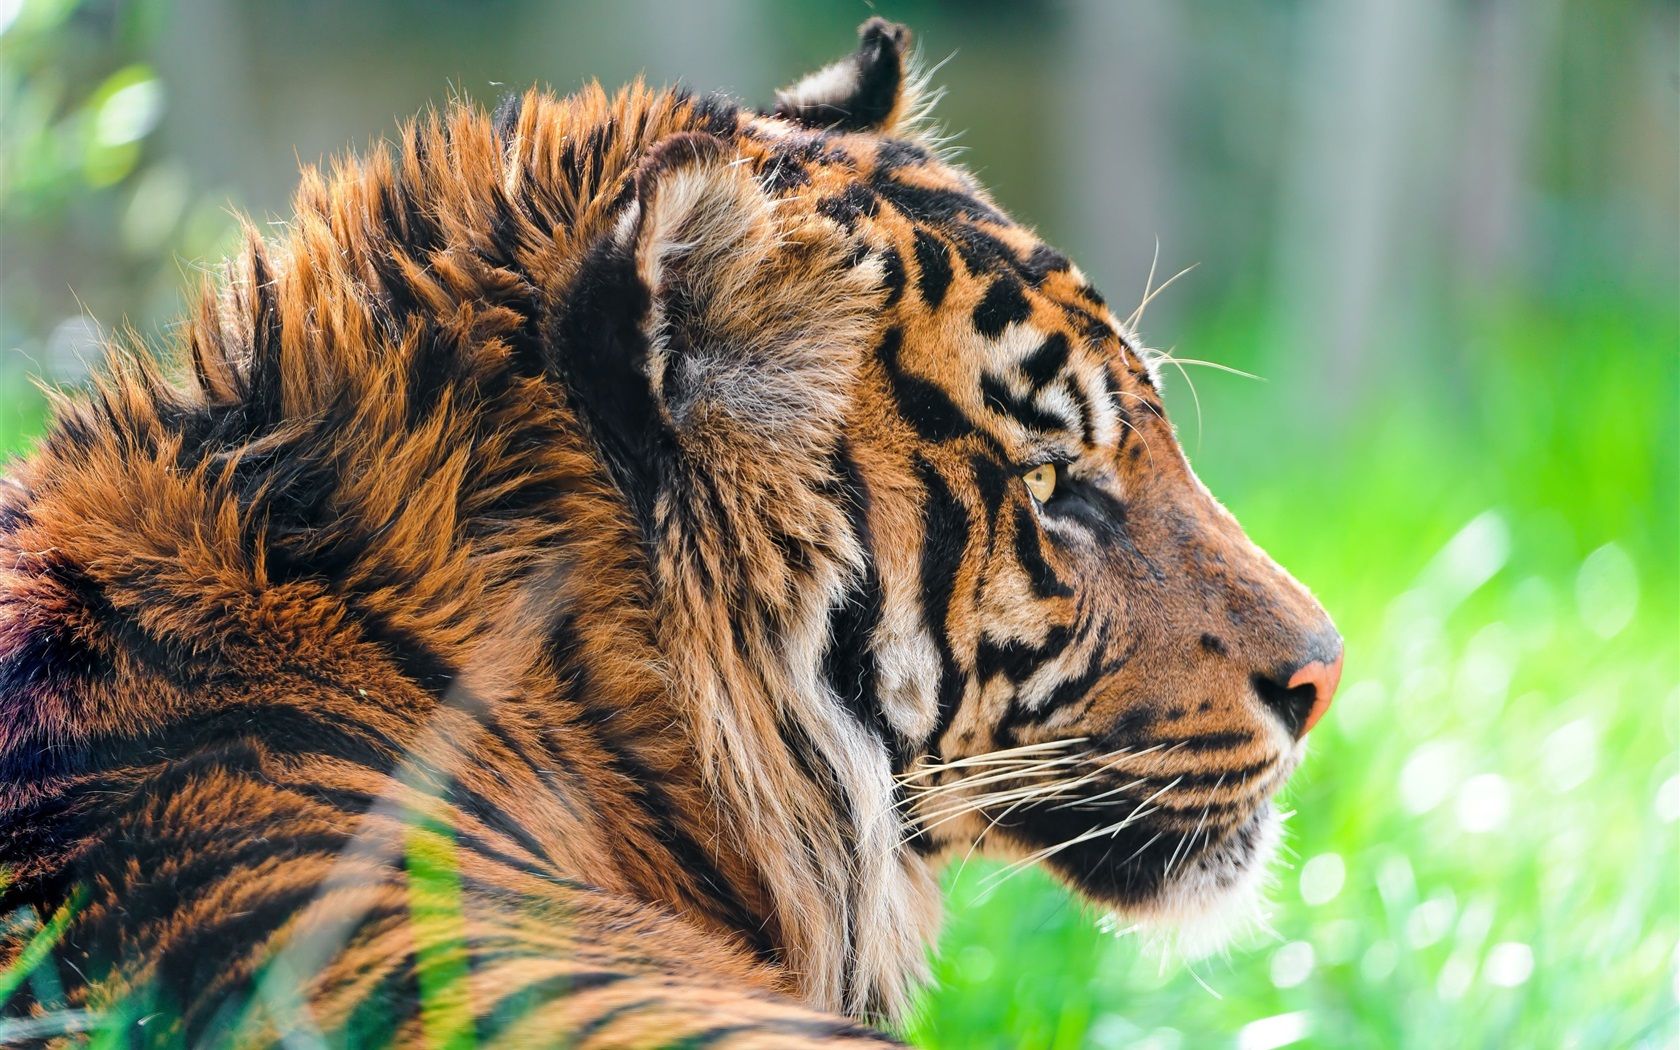  Tiere Hintergrundbild 1680x1050. Wilde Tiere, Tiger im Gras 3840x2160 UHD 4K Hintergrundbilder, HD, Bild